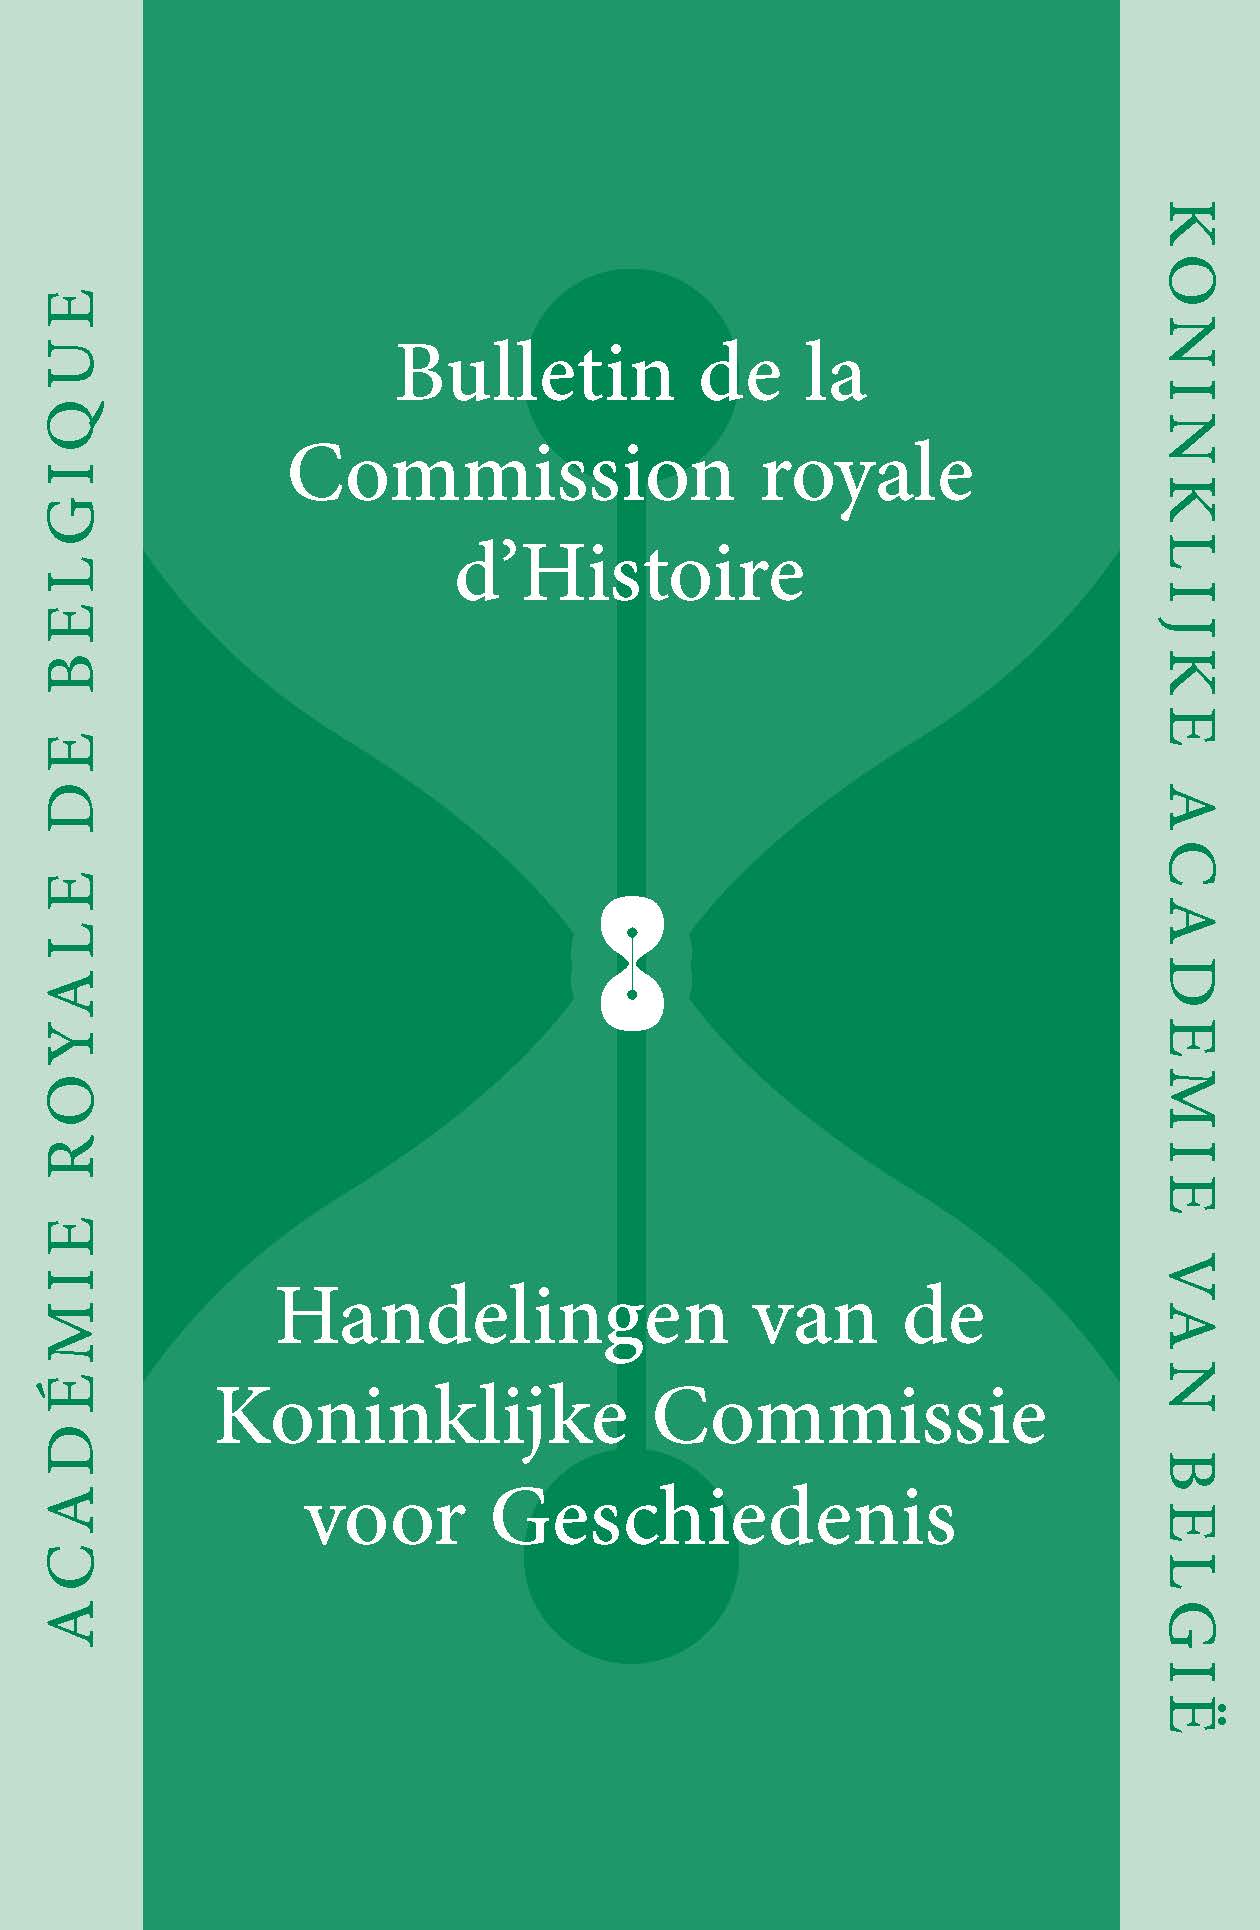 HANDELINGEN VAN DE KONINKLIJKE COMMISSIE VOOR GESCHIEDENIS/BULLETIN, vol. 177, 2011